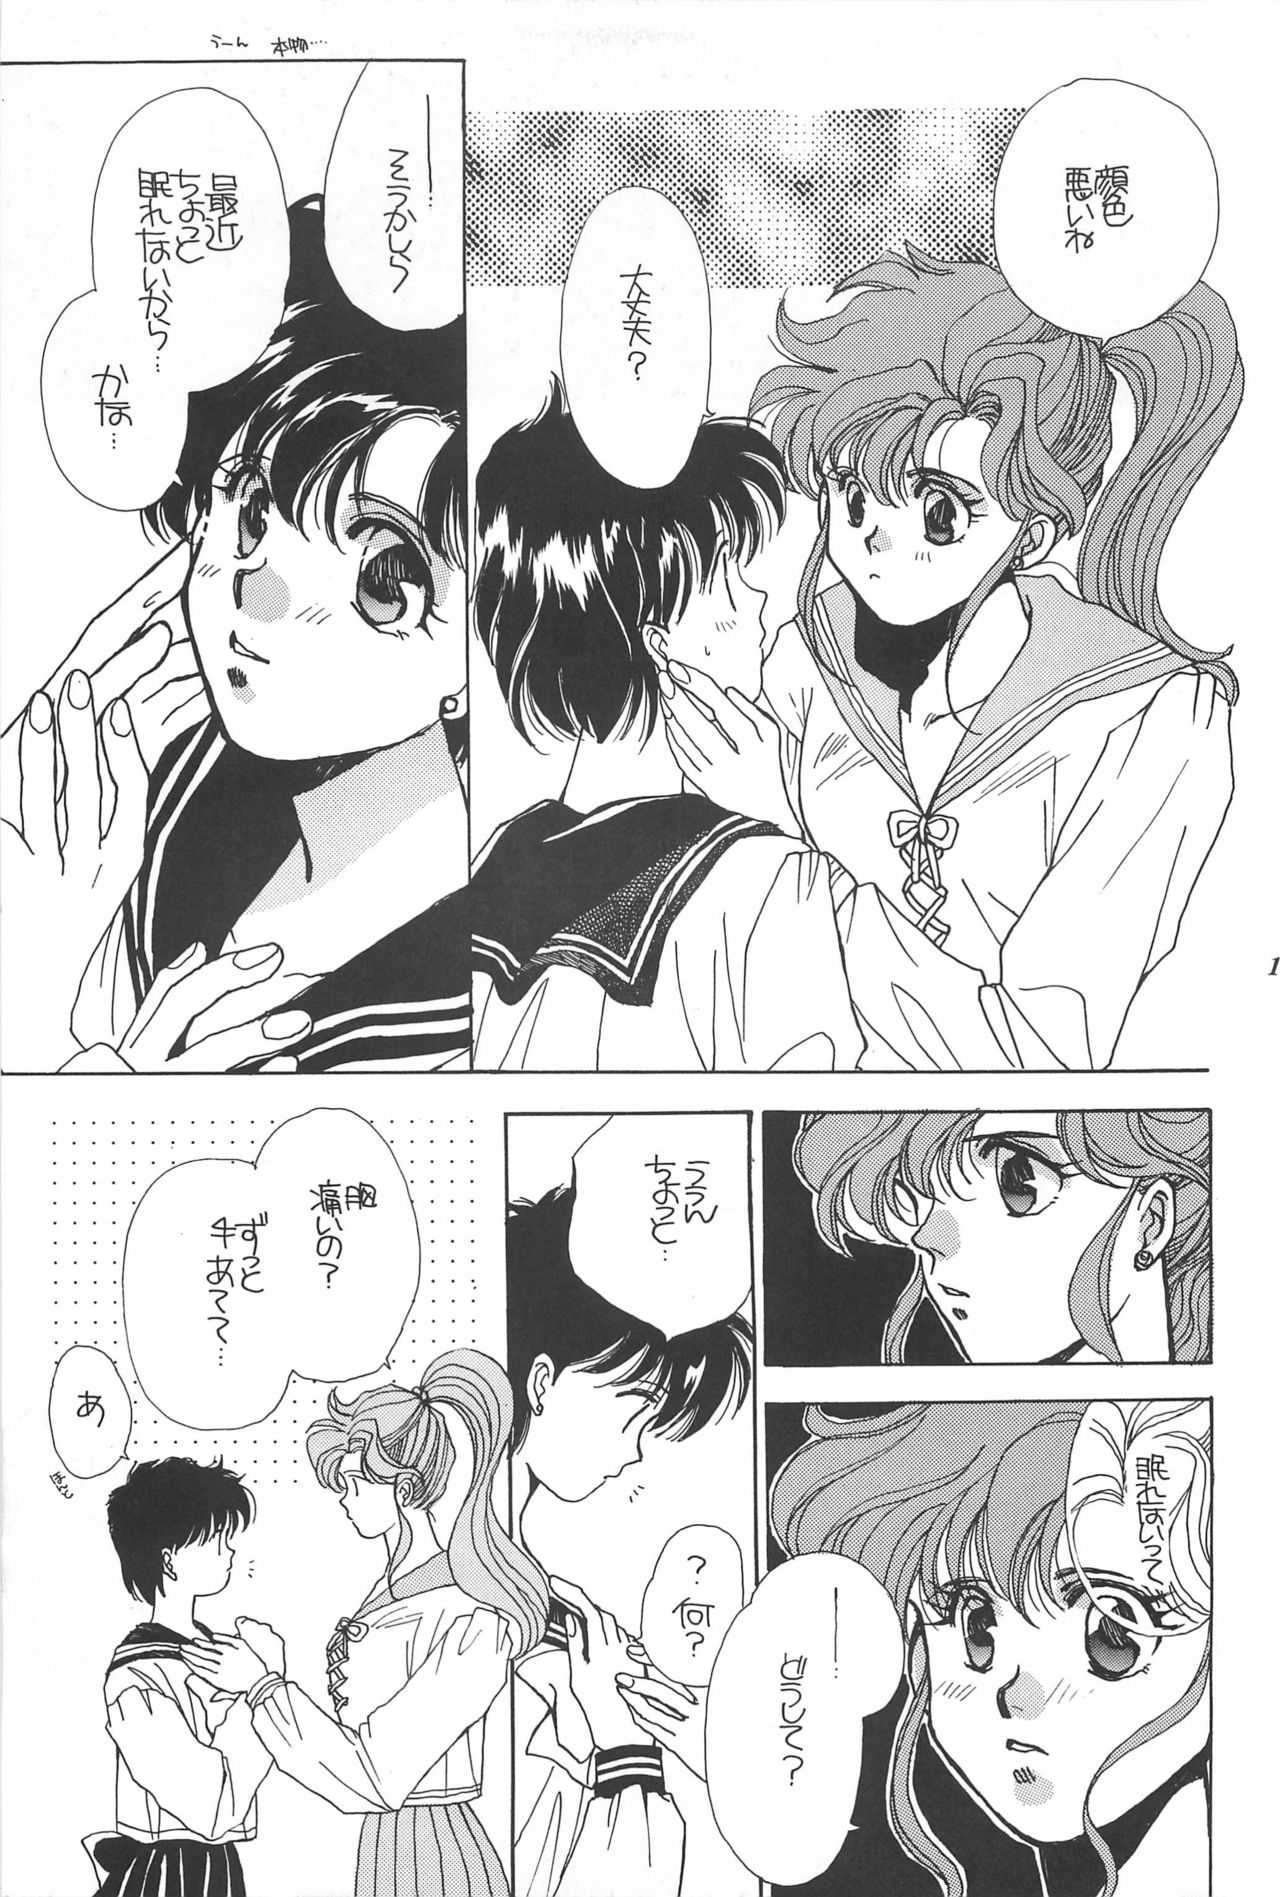 [Hello World (Muttri Moony)] Kaze no You ni Yume no You ni - Sailor Moon Collection (Sailor Moon) 176